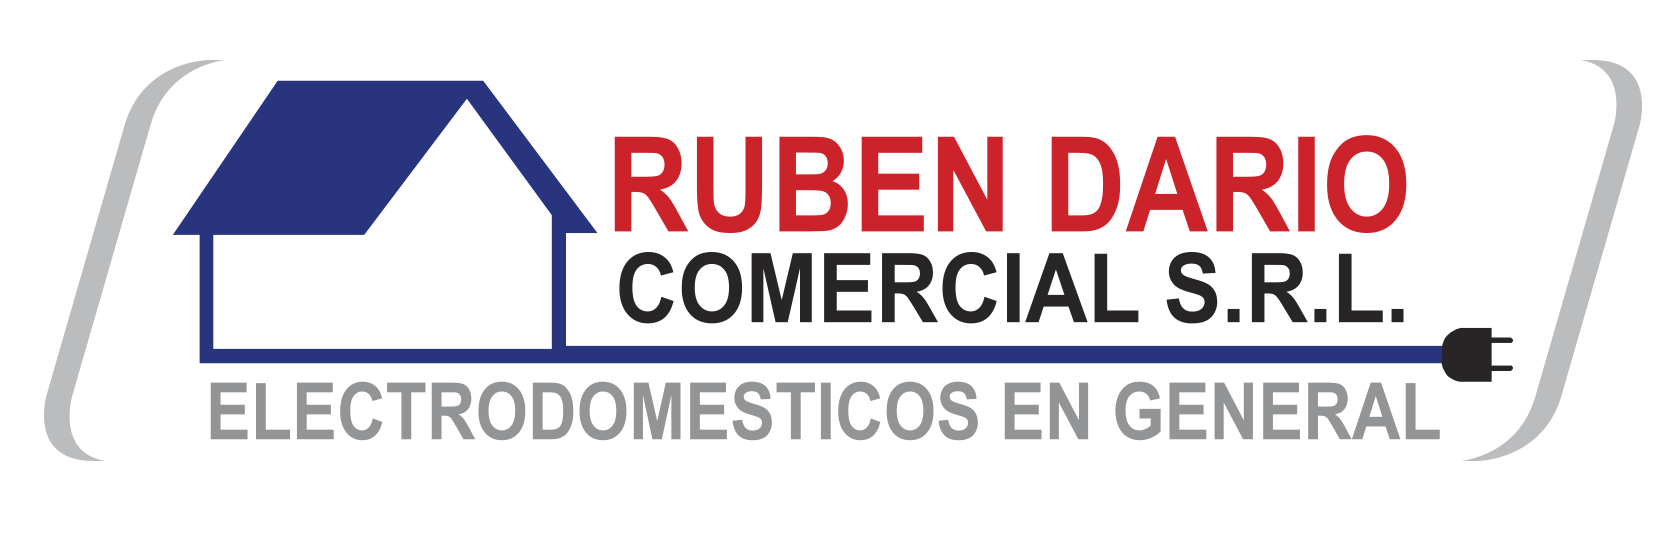 Ruben Dario Comercial S.R.L.